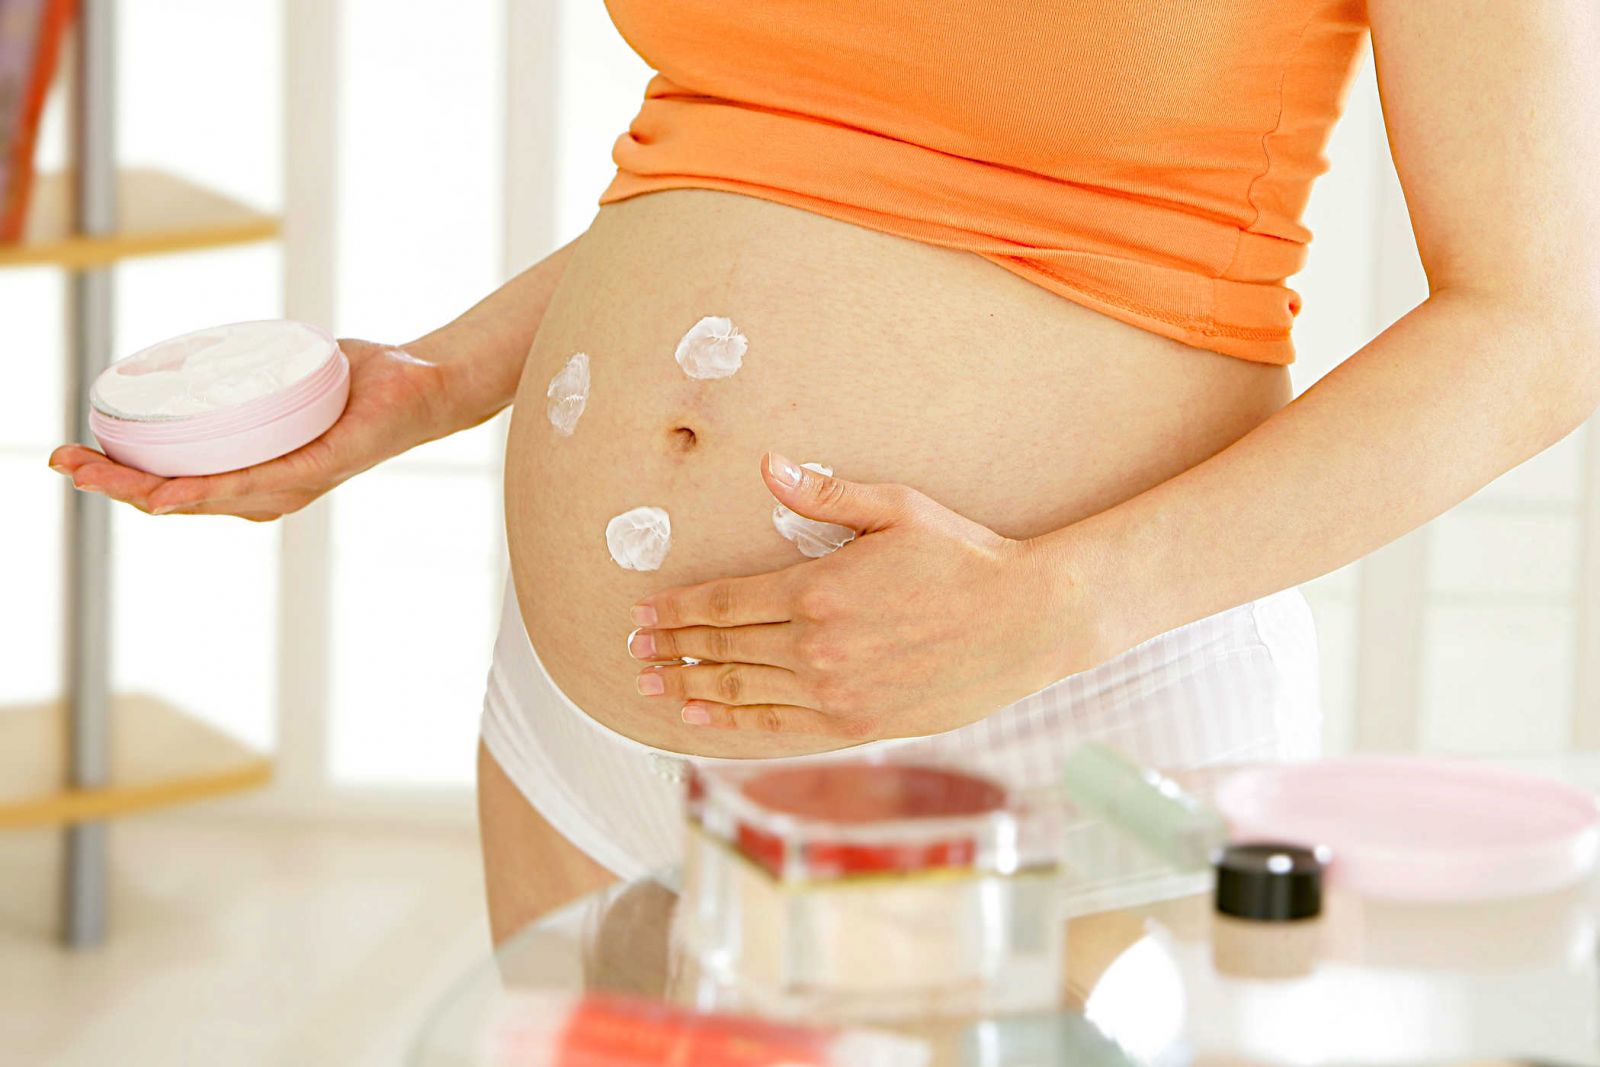 Một số thành phẩm dưỡng ẩm cần tránh khi bạn sử dụng cho mẹ bầu 